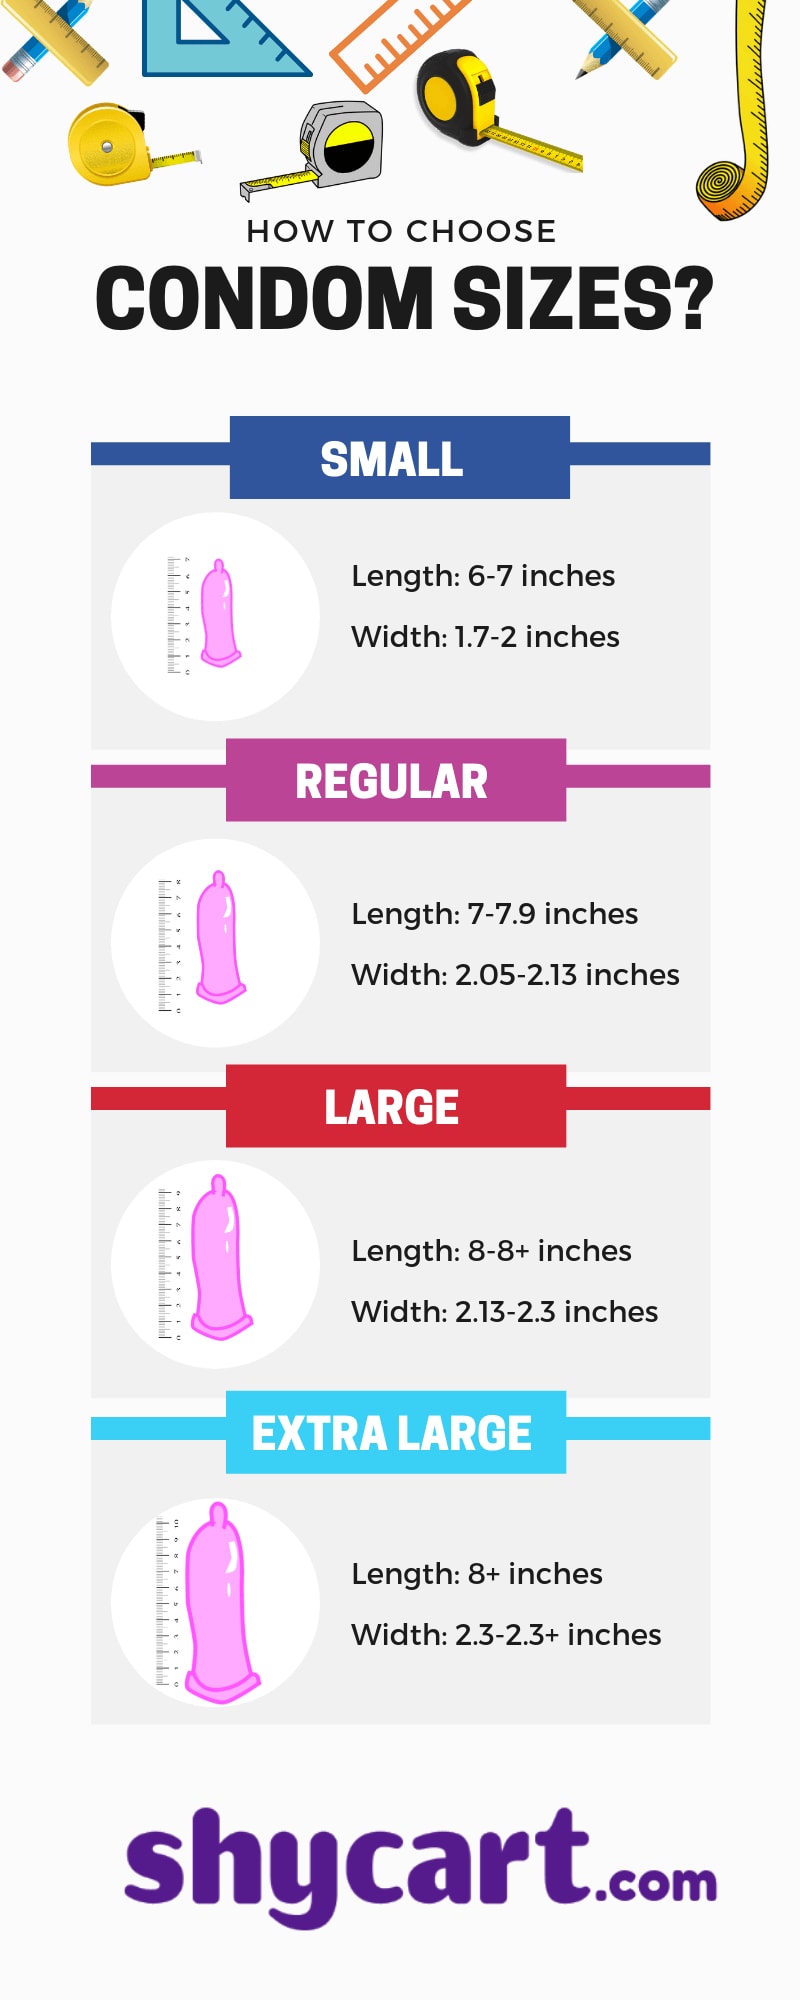 Condom Sizes - Infographic